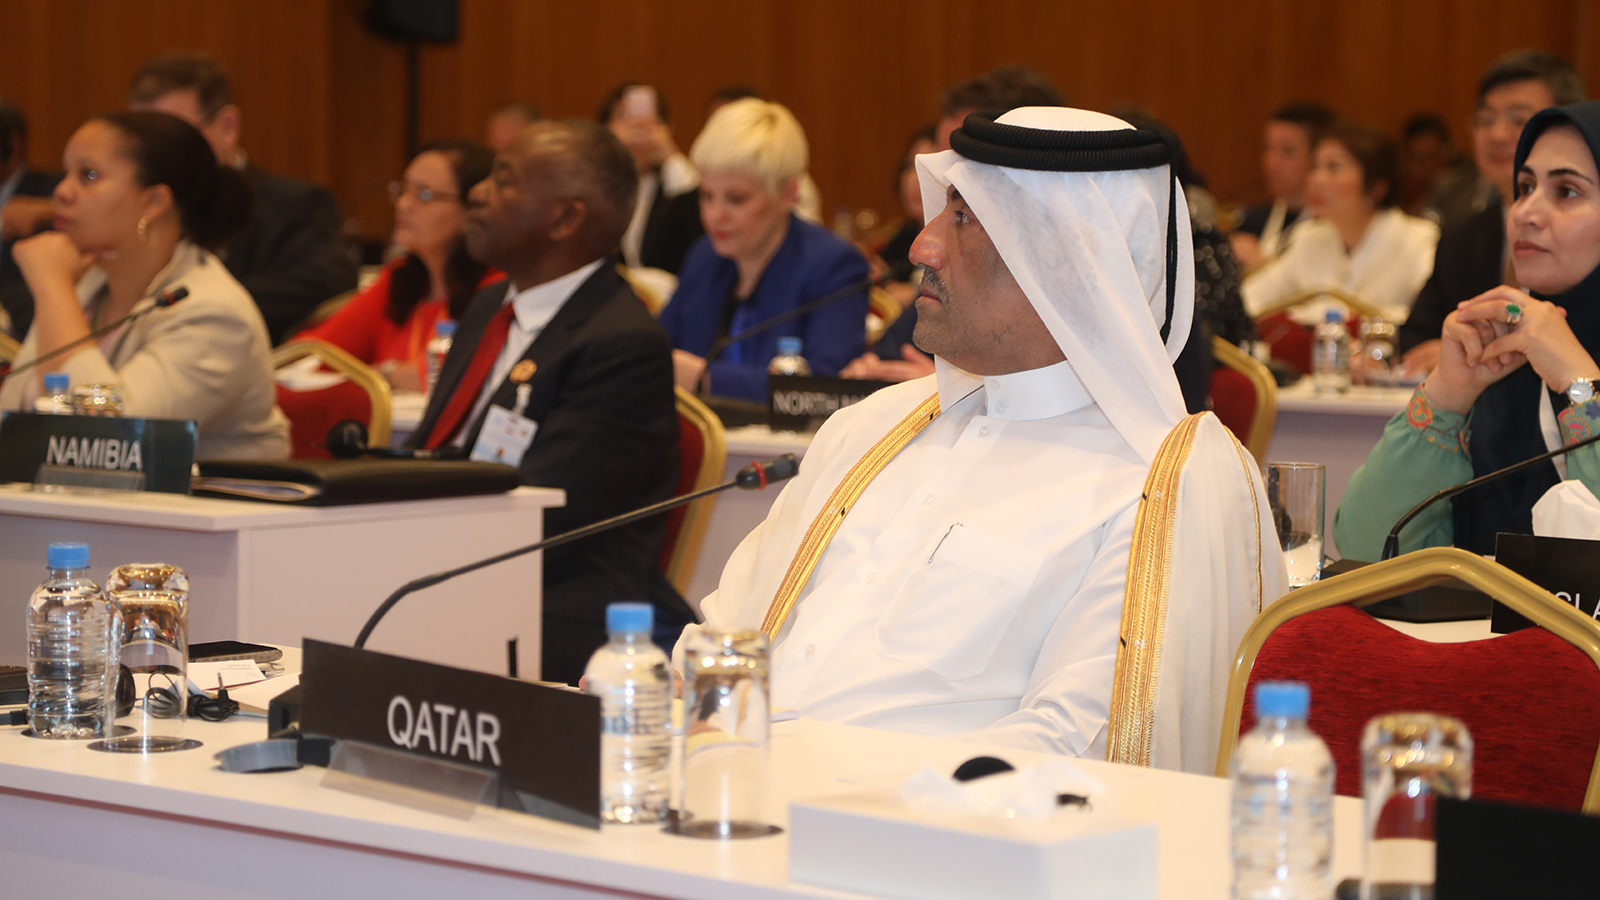 ‪الأحبابي ينوه بتقديم قطر توصية للجنة السلم والأمن الدوليين بشأن سيادة الدول‬ (الجزيرة)